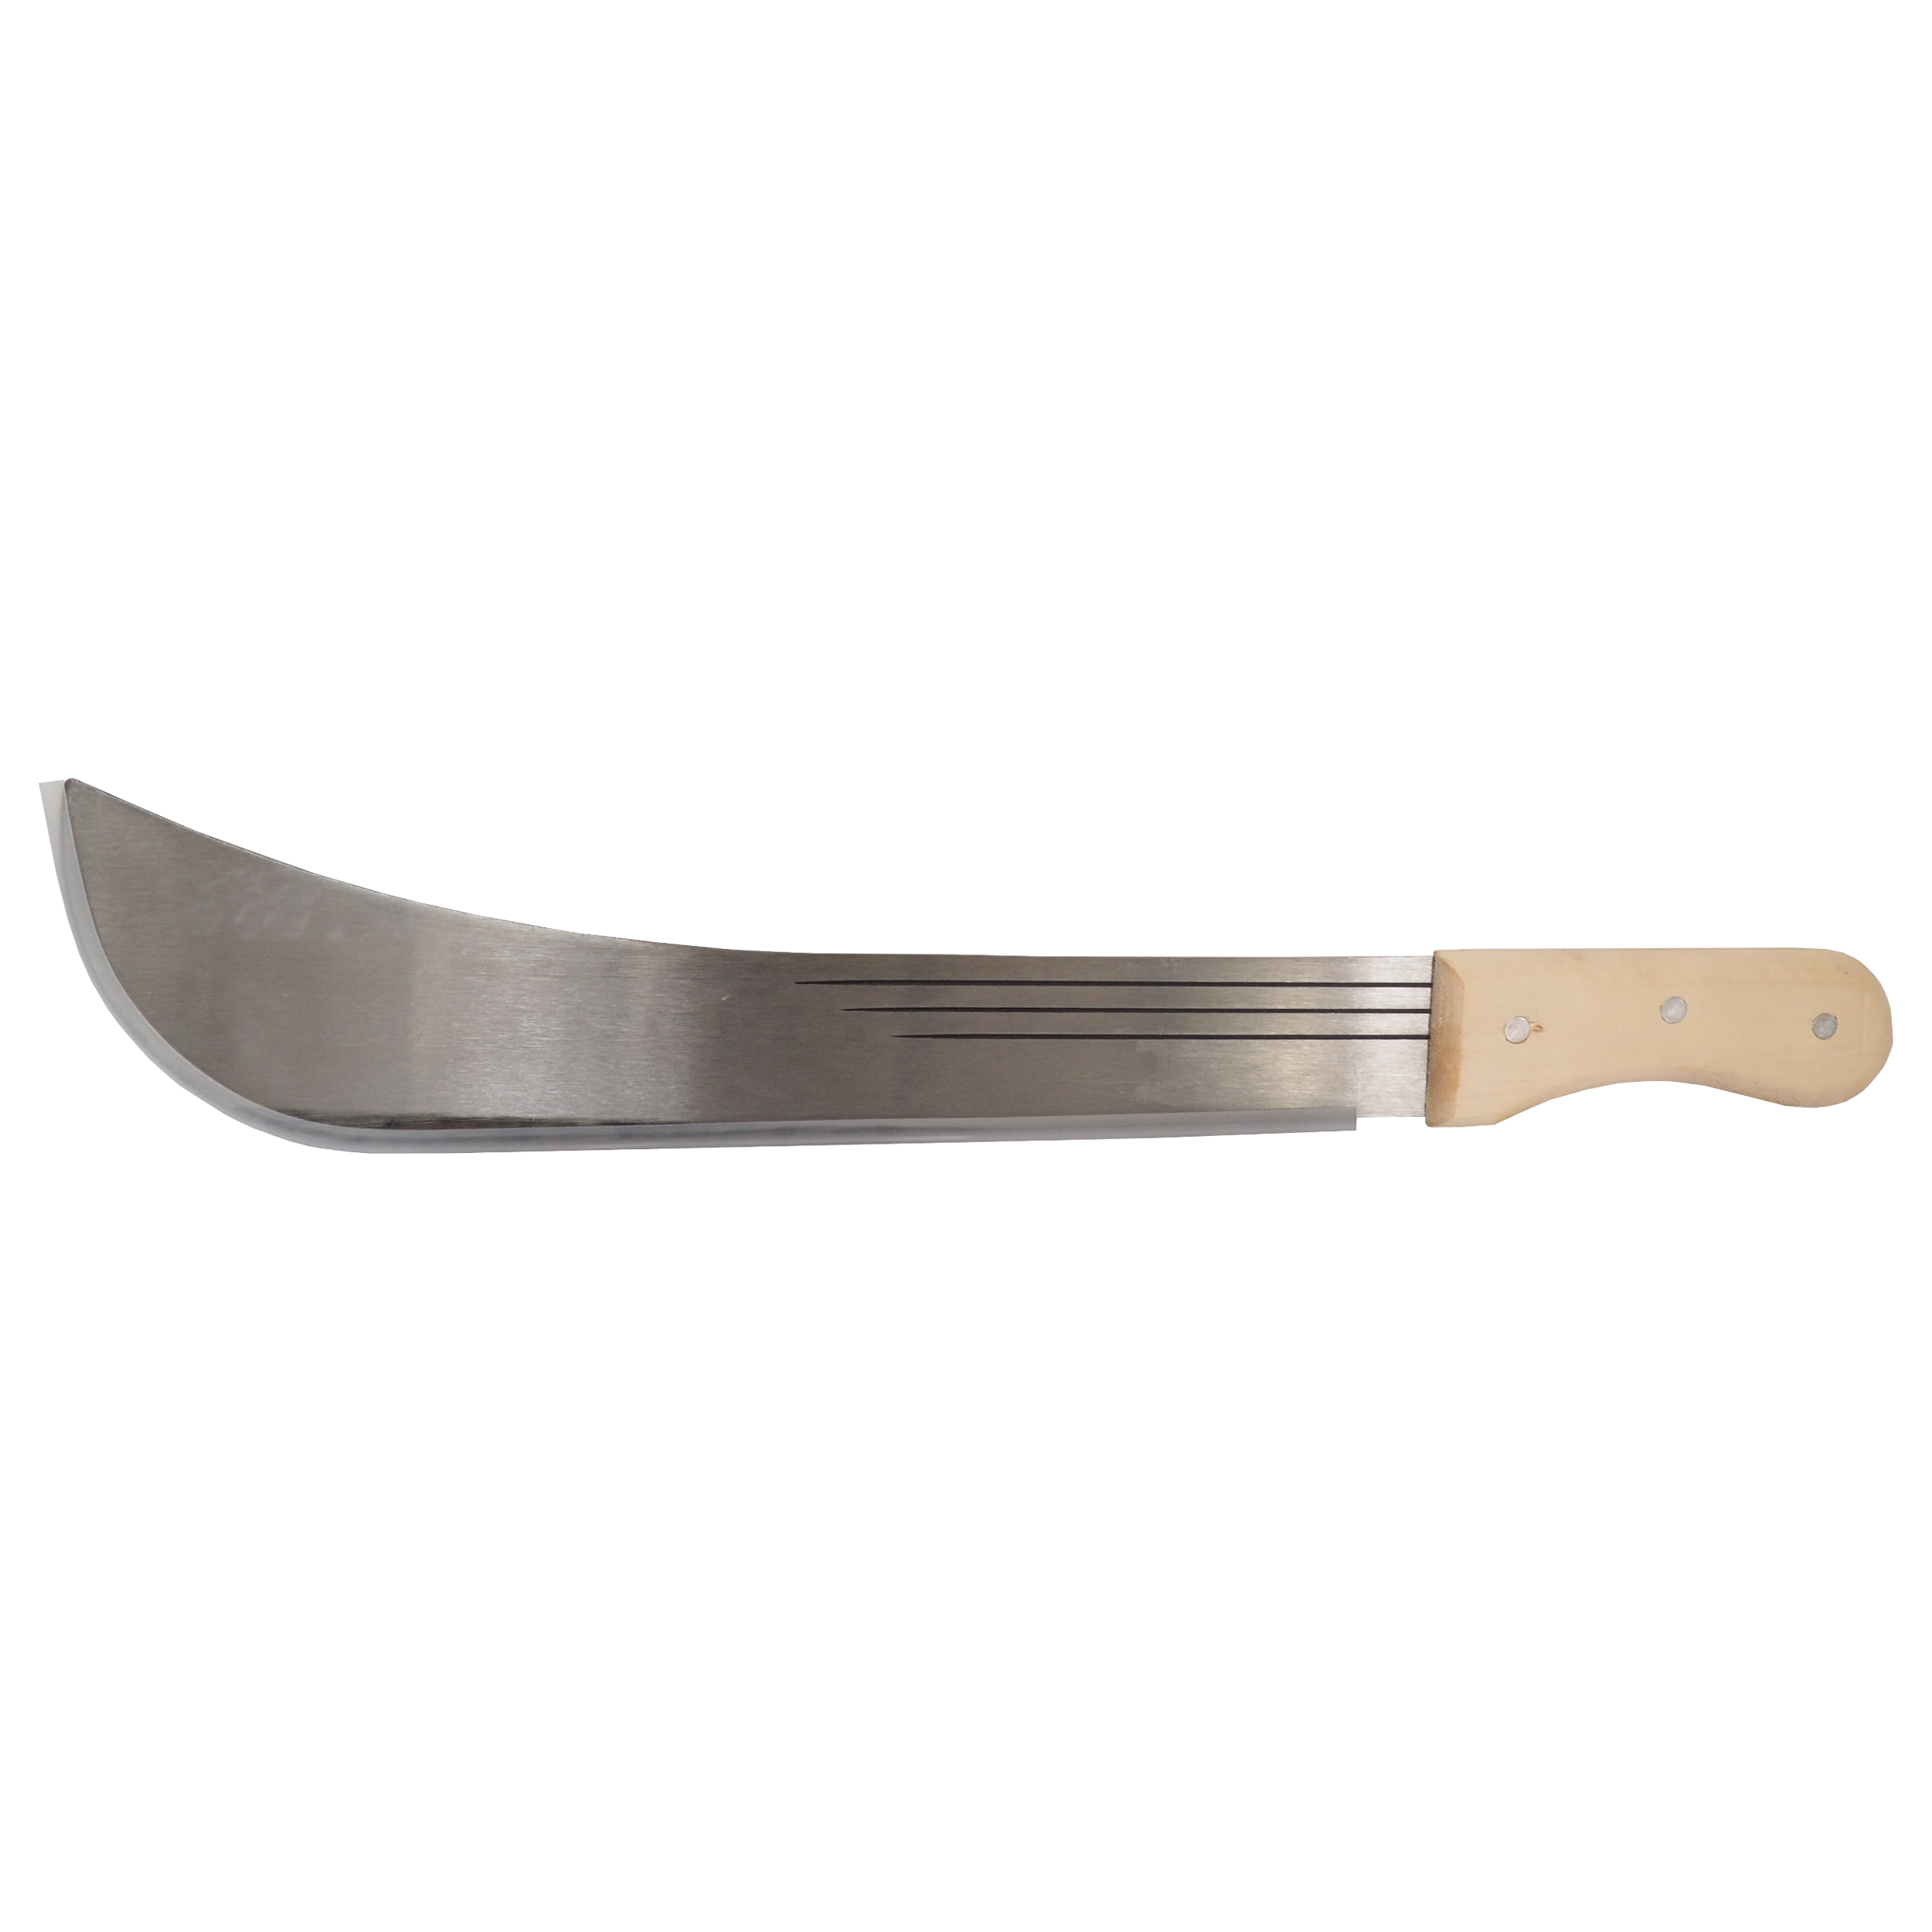 TOPTRADE mačeta ocelová, s dřevěnou rukojetí, 16“ čepel, 500 mm 0.54 Kg TOP Sklad4 309170 357